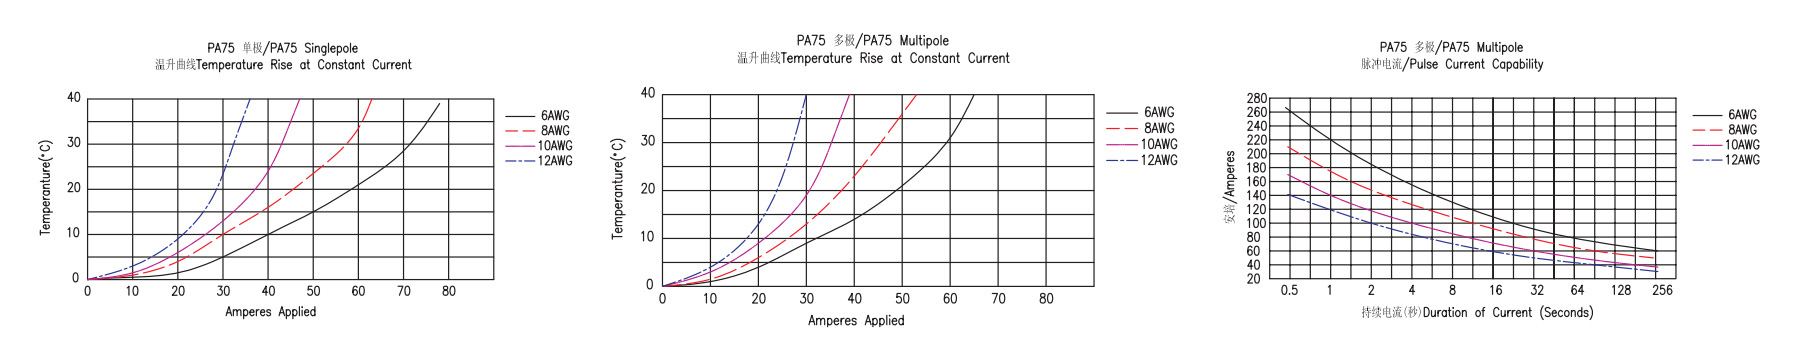 PA75-3 қуат қосқышының комбинациясы